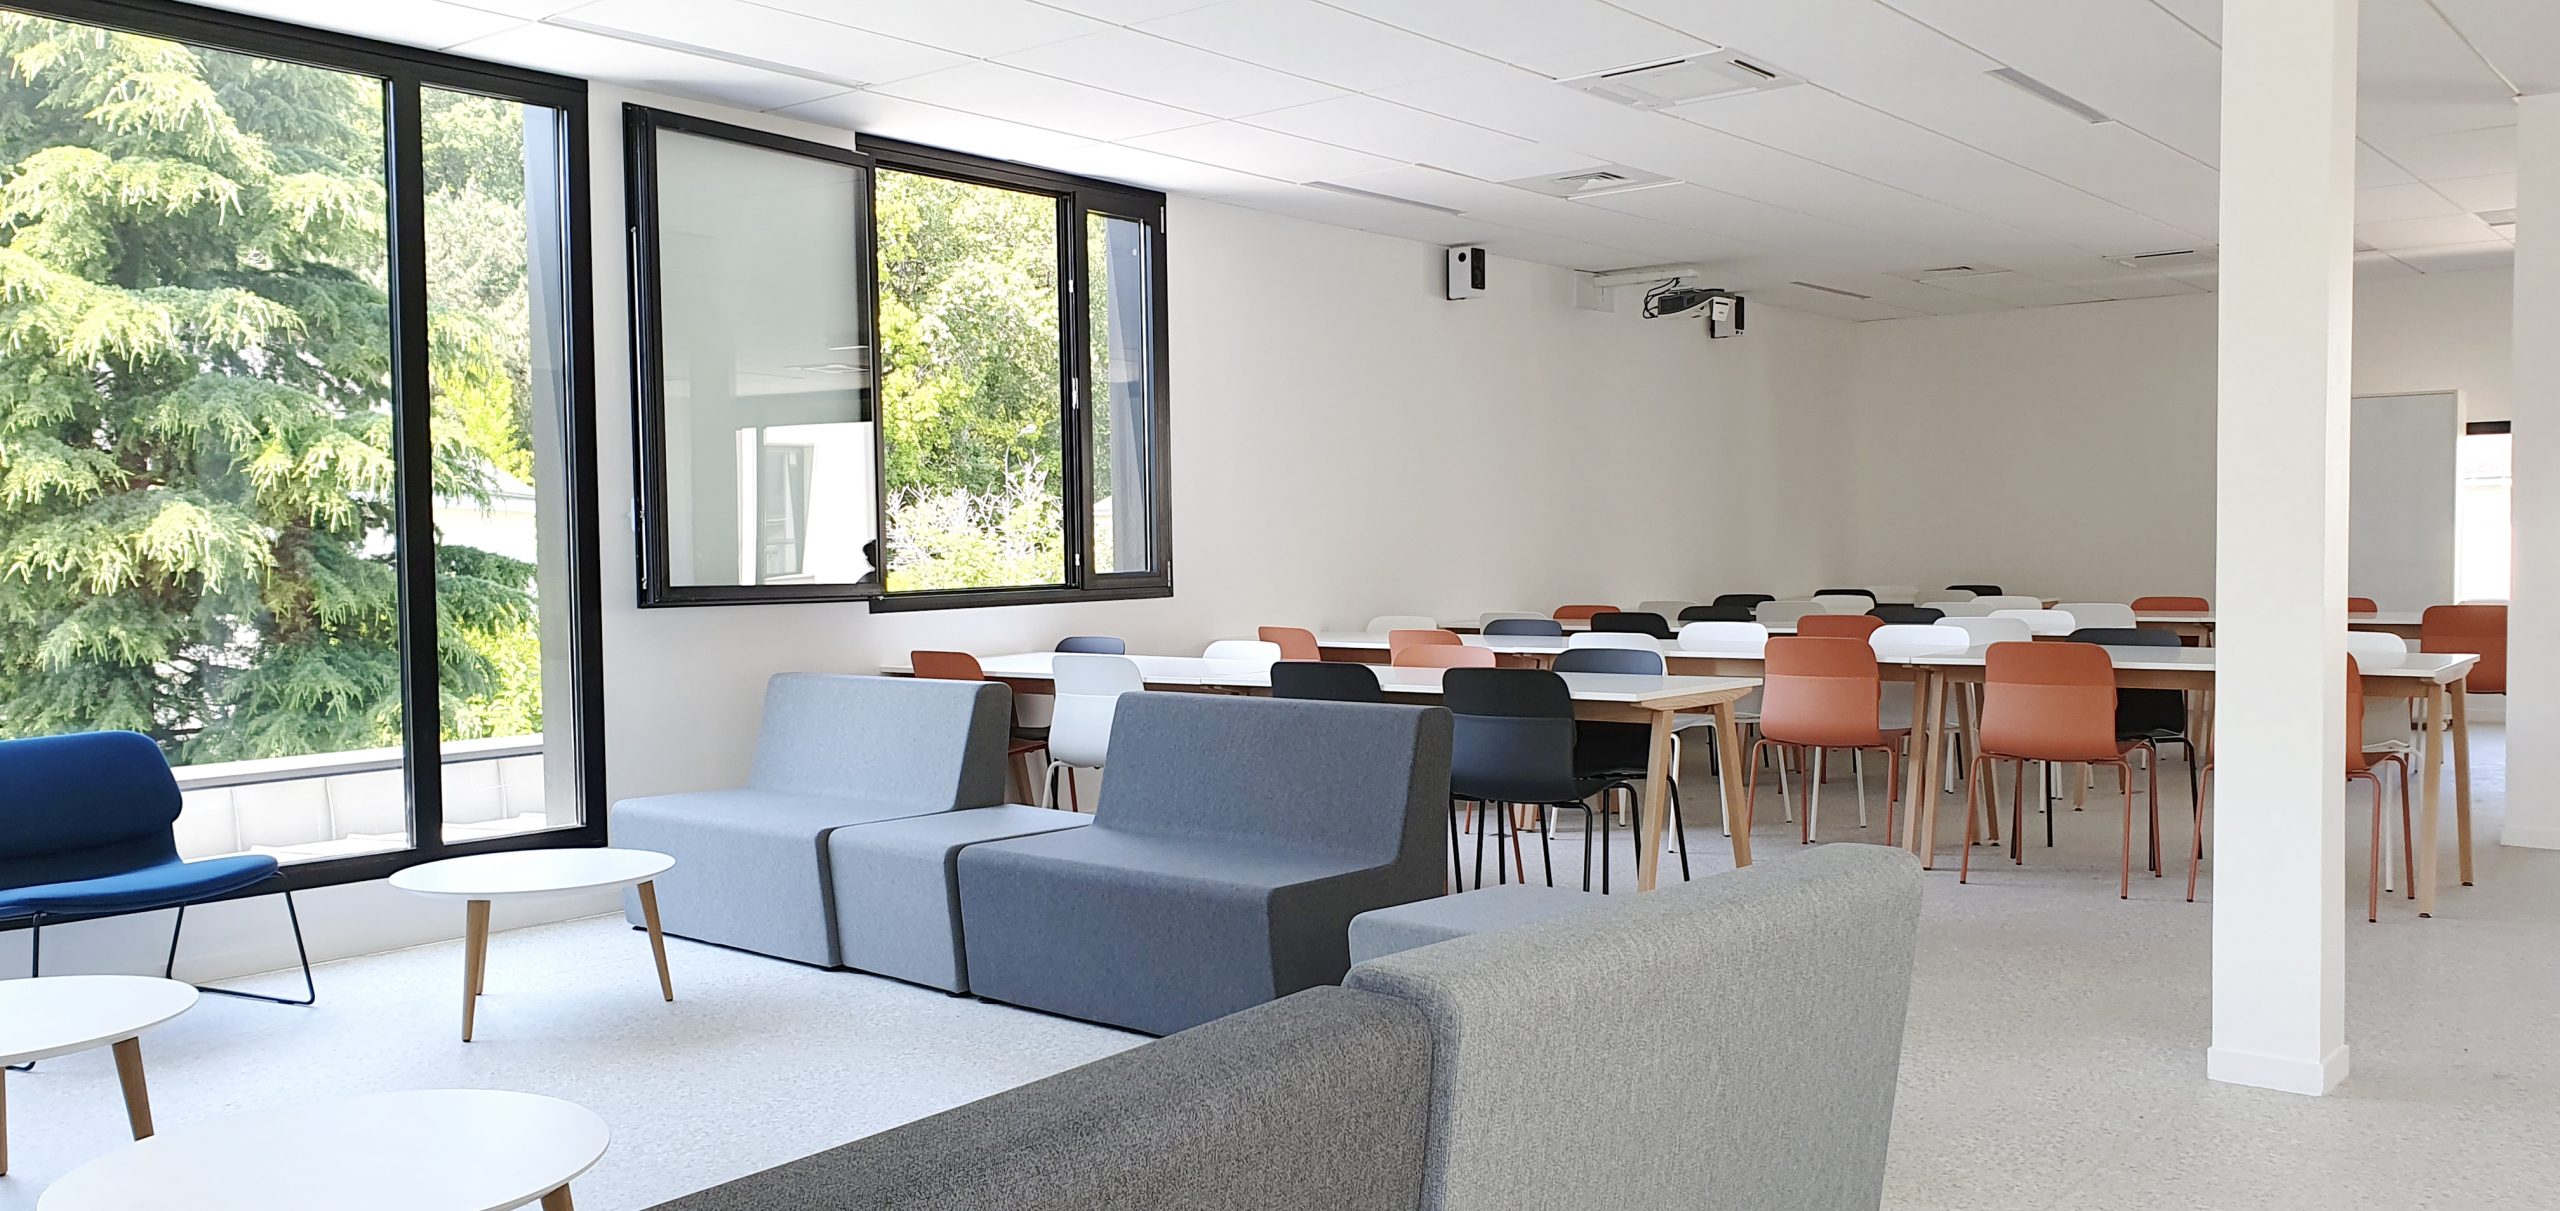 Nouvelle cafétéria campus Ste Marguerite - SFDA.lab - hethos